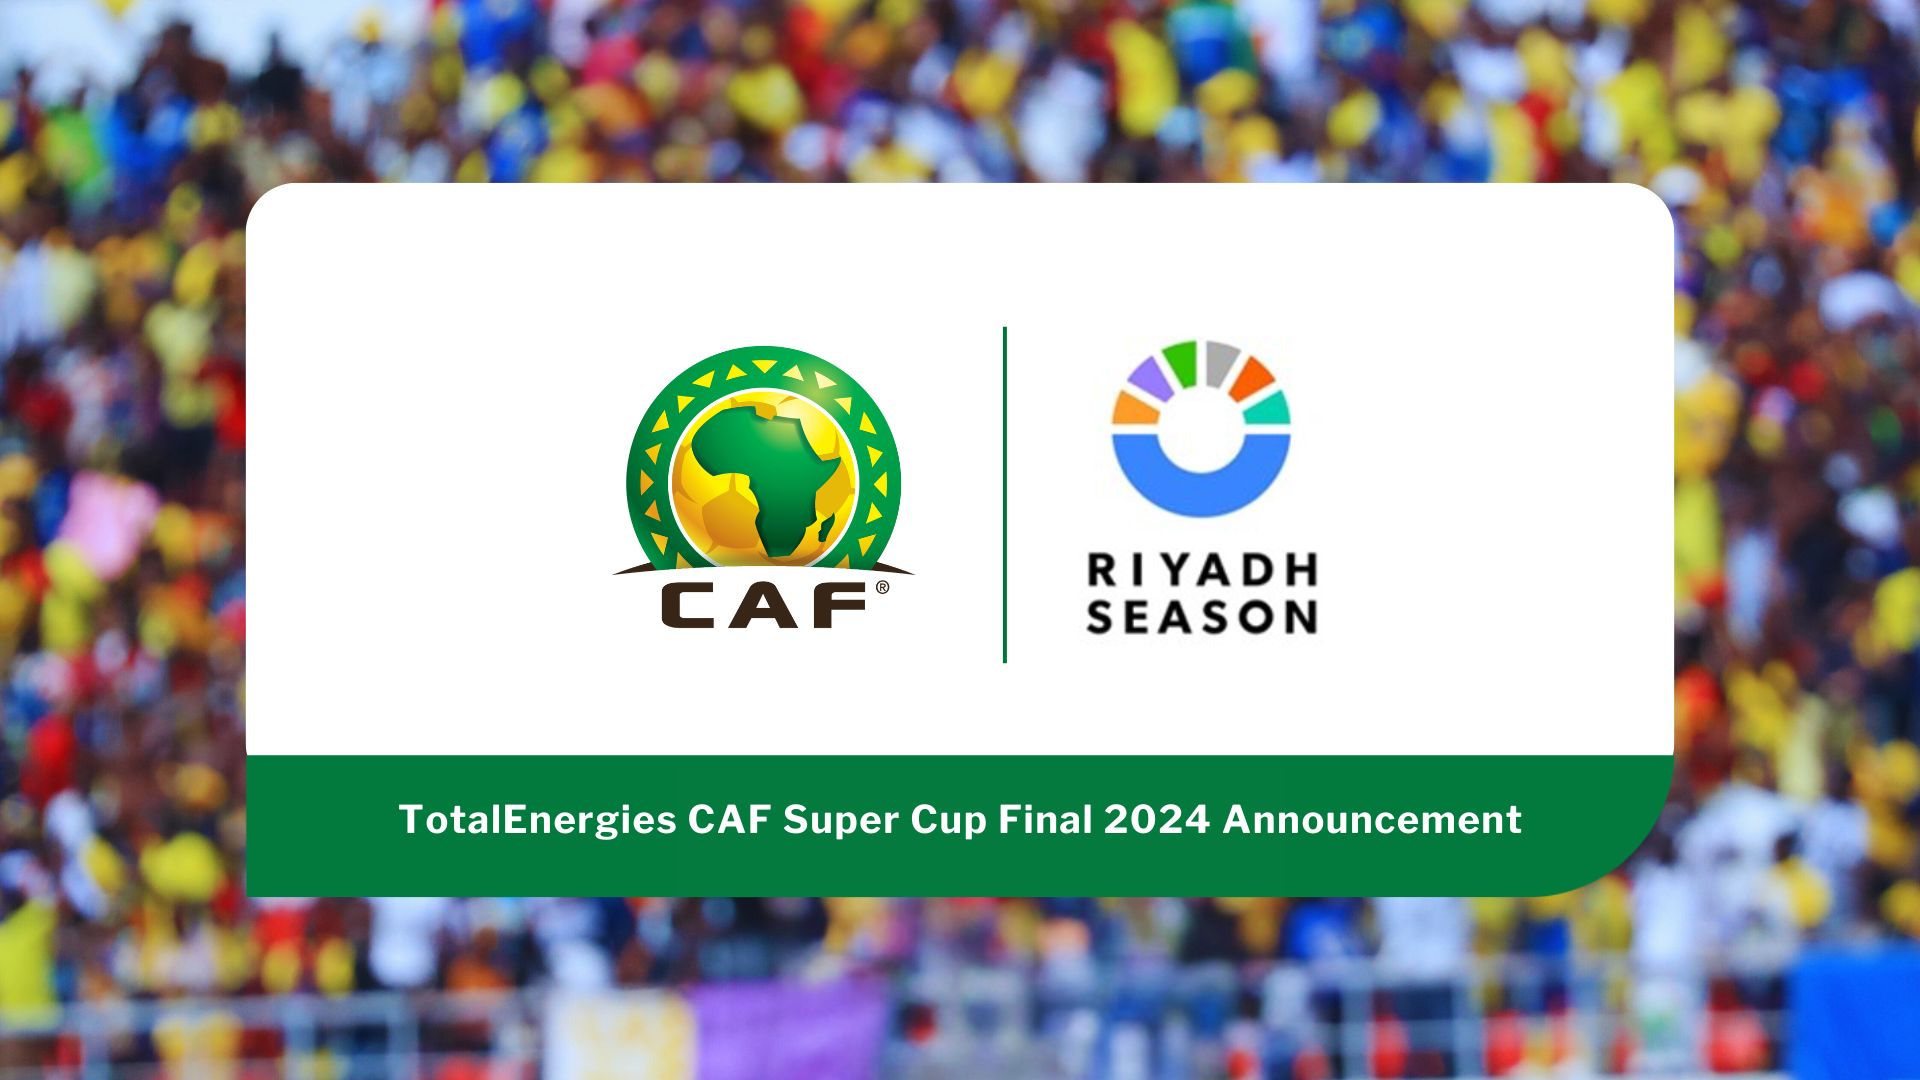 Le Président de la CAF, Dr Patrice Motsepe, et S.E. Turki Alalshikh annoncent Riyad, la capitale de l’Arabie Saoudite, comme ville hôte de la finale de la Supercoupe de la CAF TotalEnergies 2024